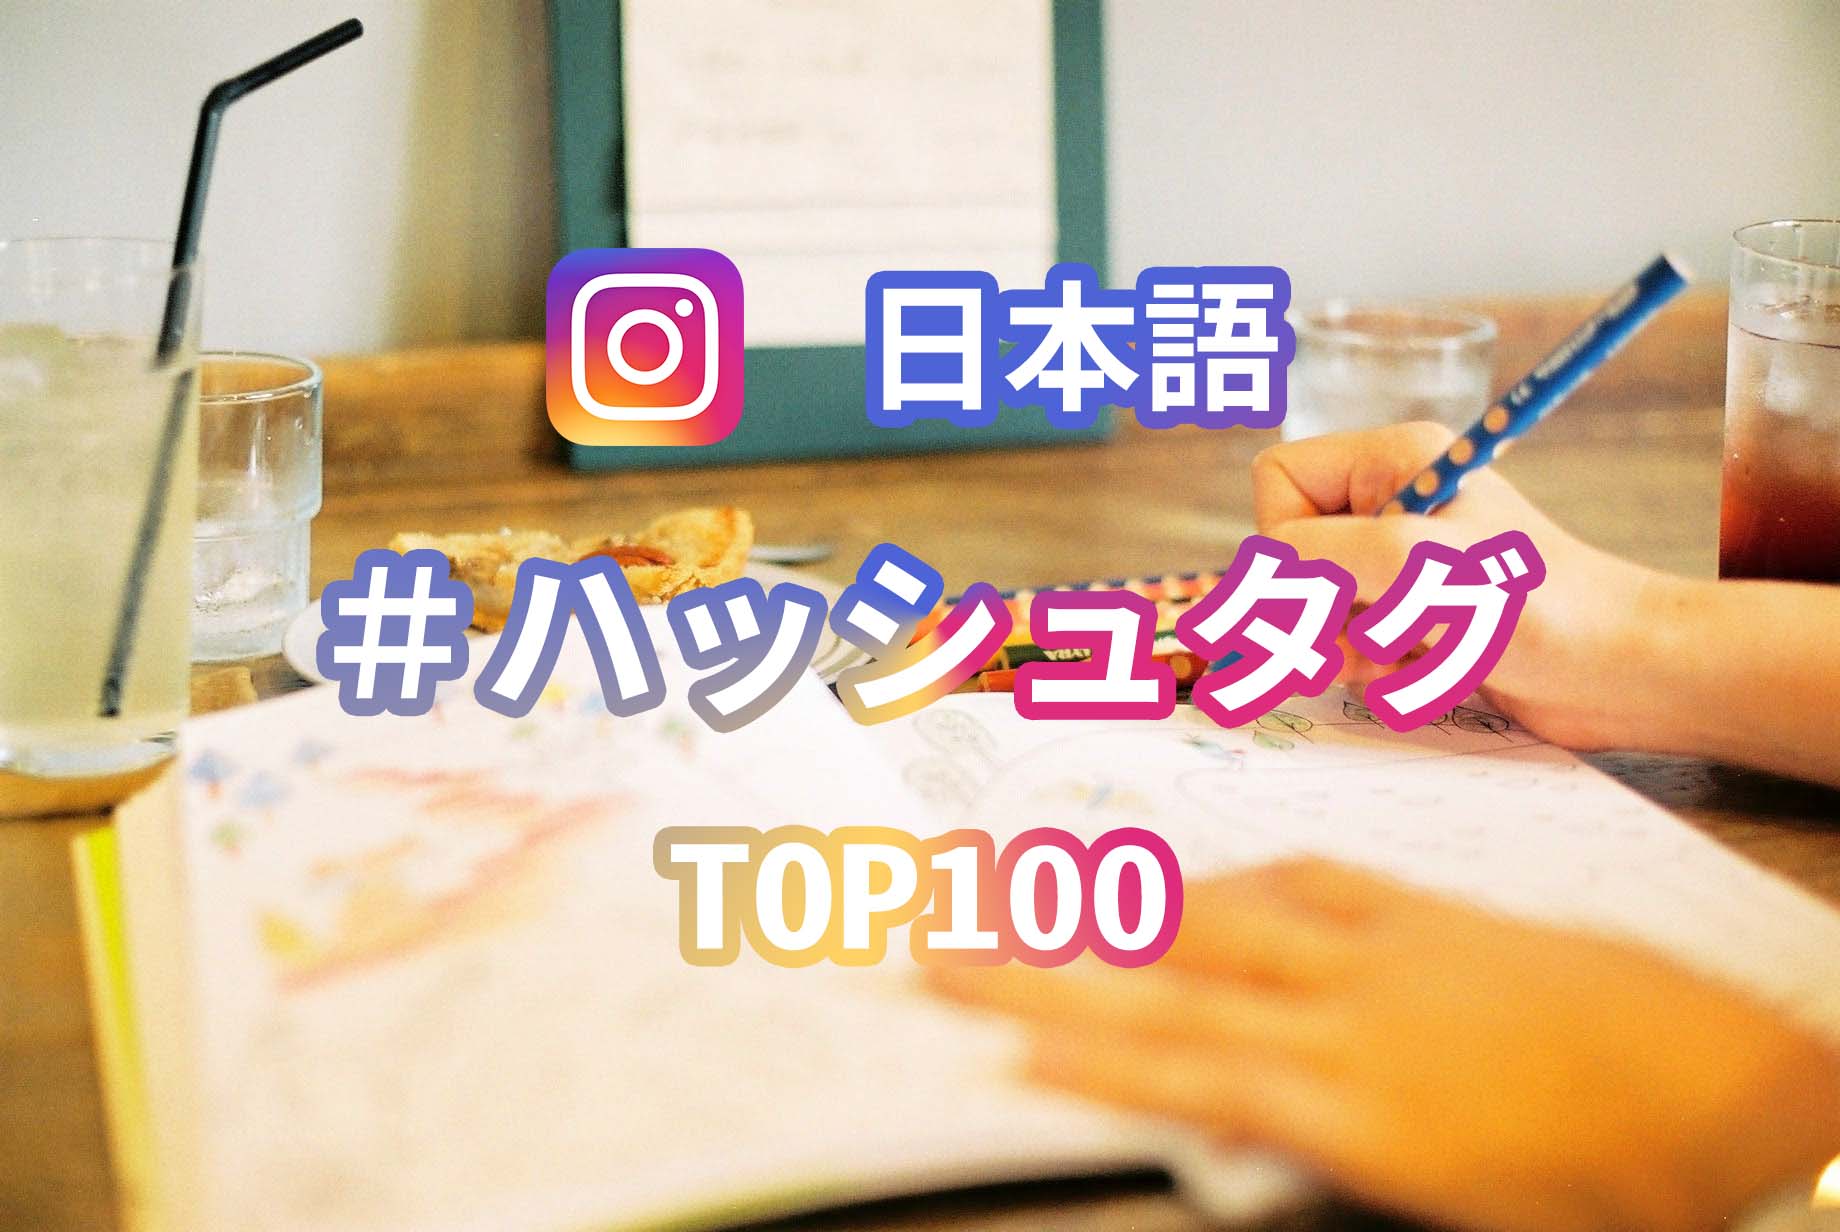 インスタで人気の日本語ハッシュタグ Top100 を調べてみた 2019年版